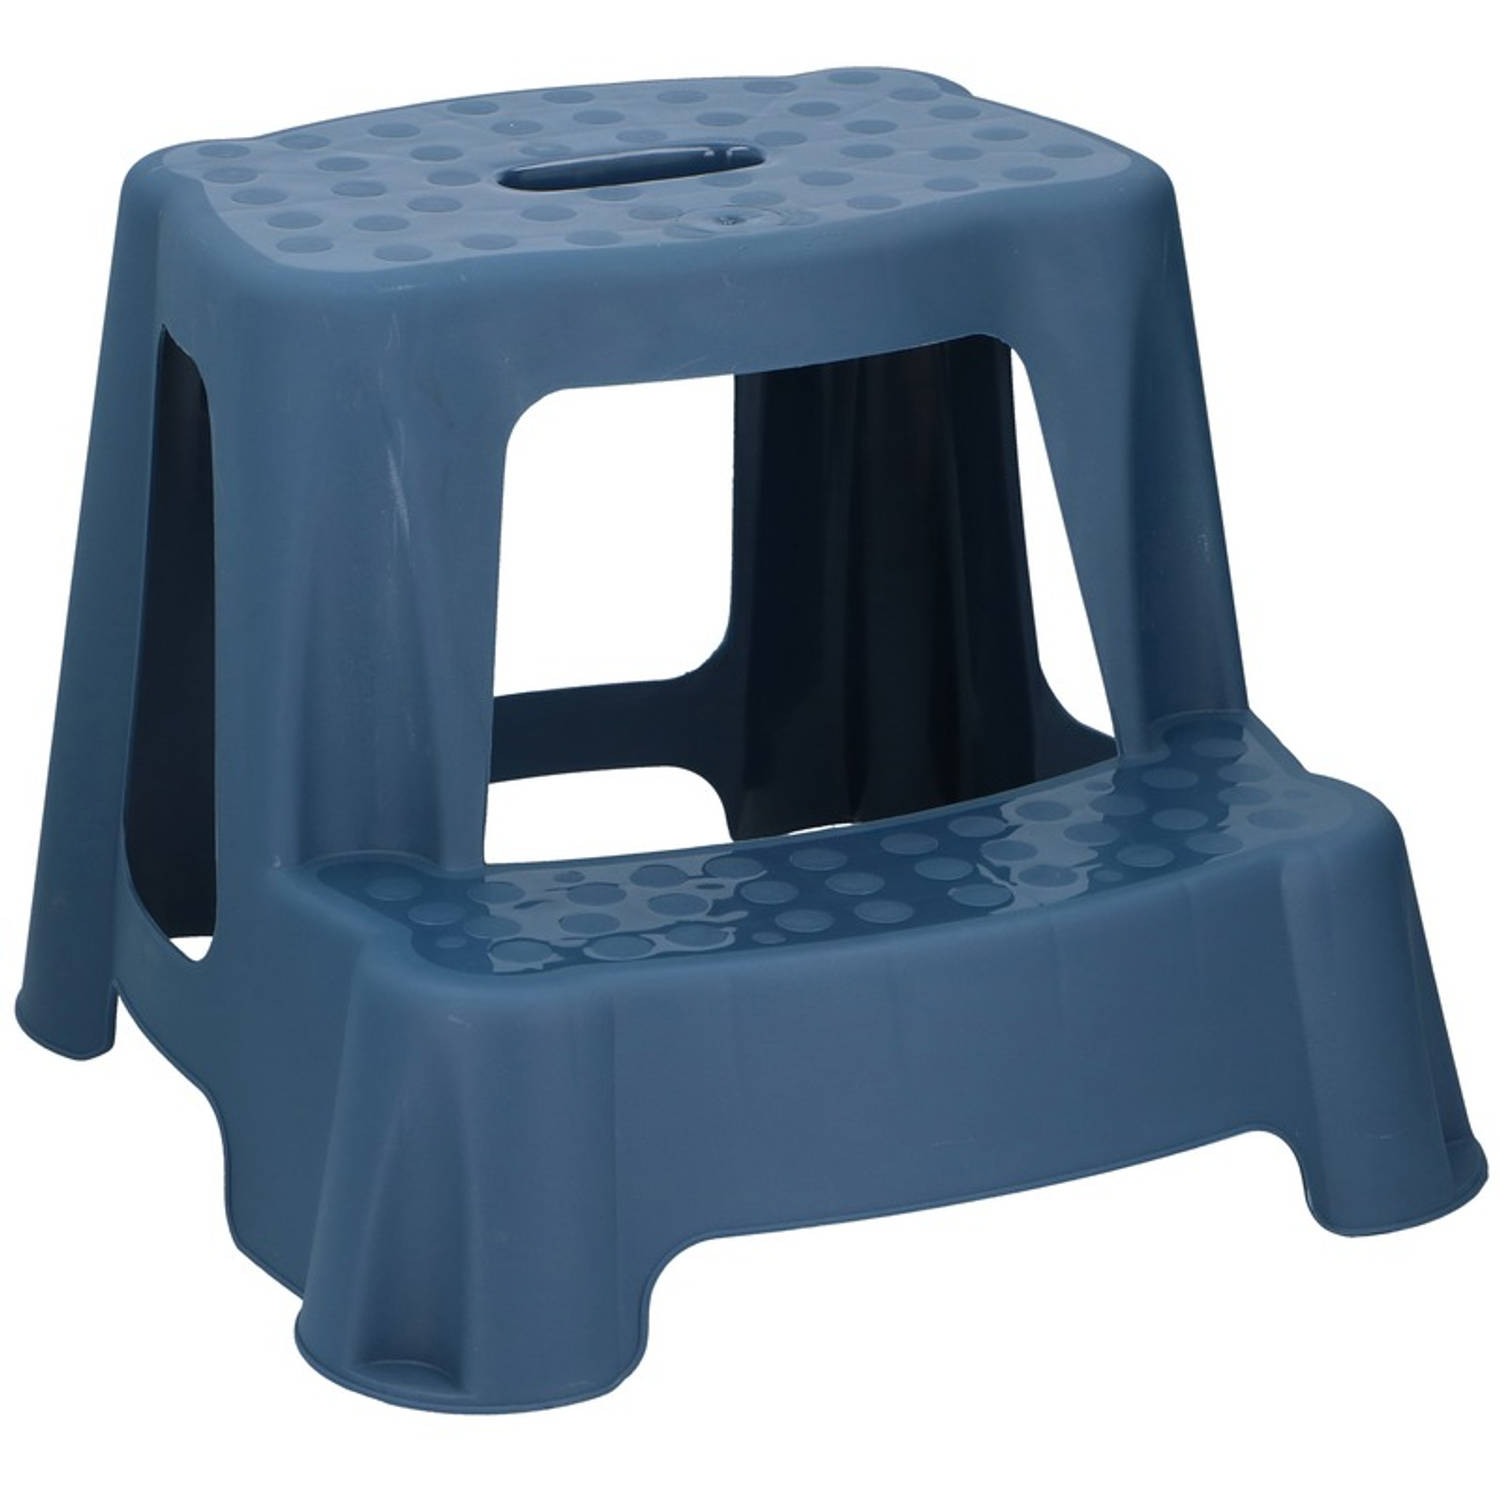 Blauw Kinderkrukje/opstapje Met 2 Treden 35 Cm - Keuken/badkamer Krukjes/opstapjes Voor Kinderen